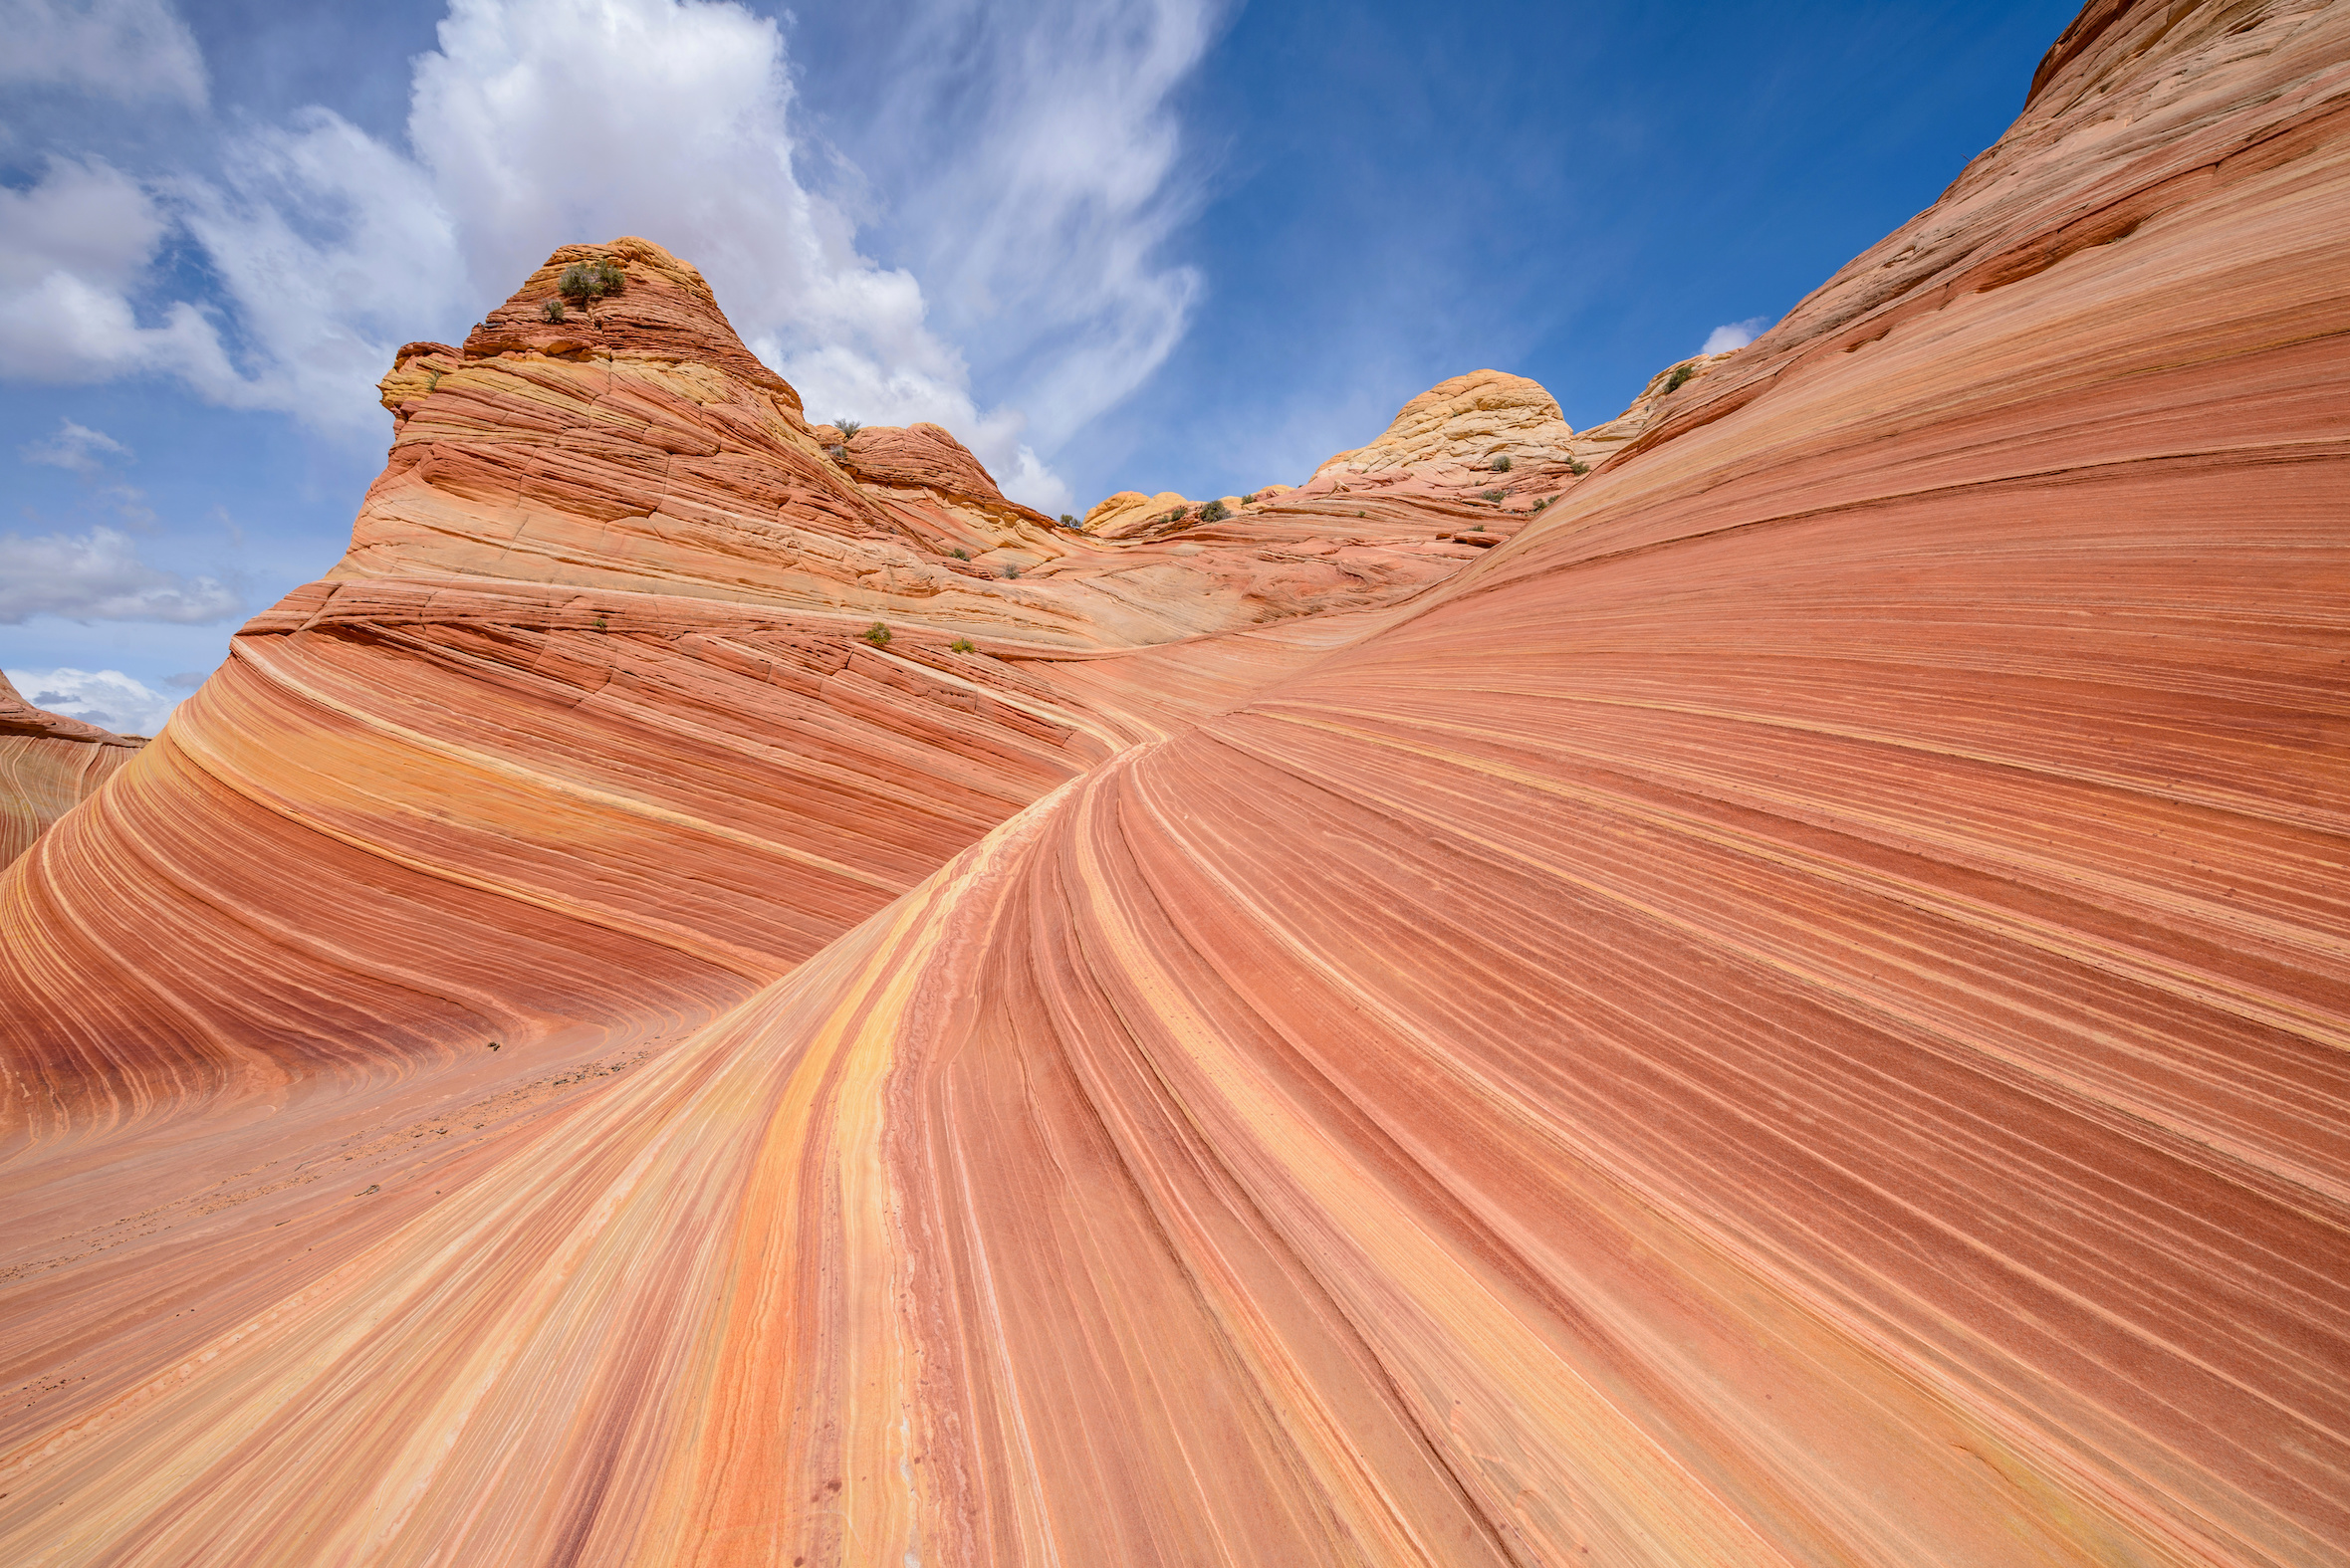 Le grès qui forme Paria Canyon-Vermilion Cliffs Wilderness (aux États-Unis) est une roche sédimentaire. © Sean Xu, Adobe Stock